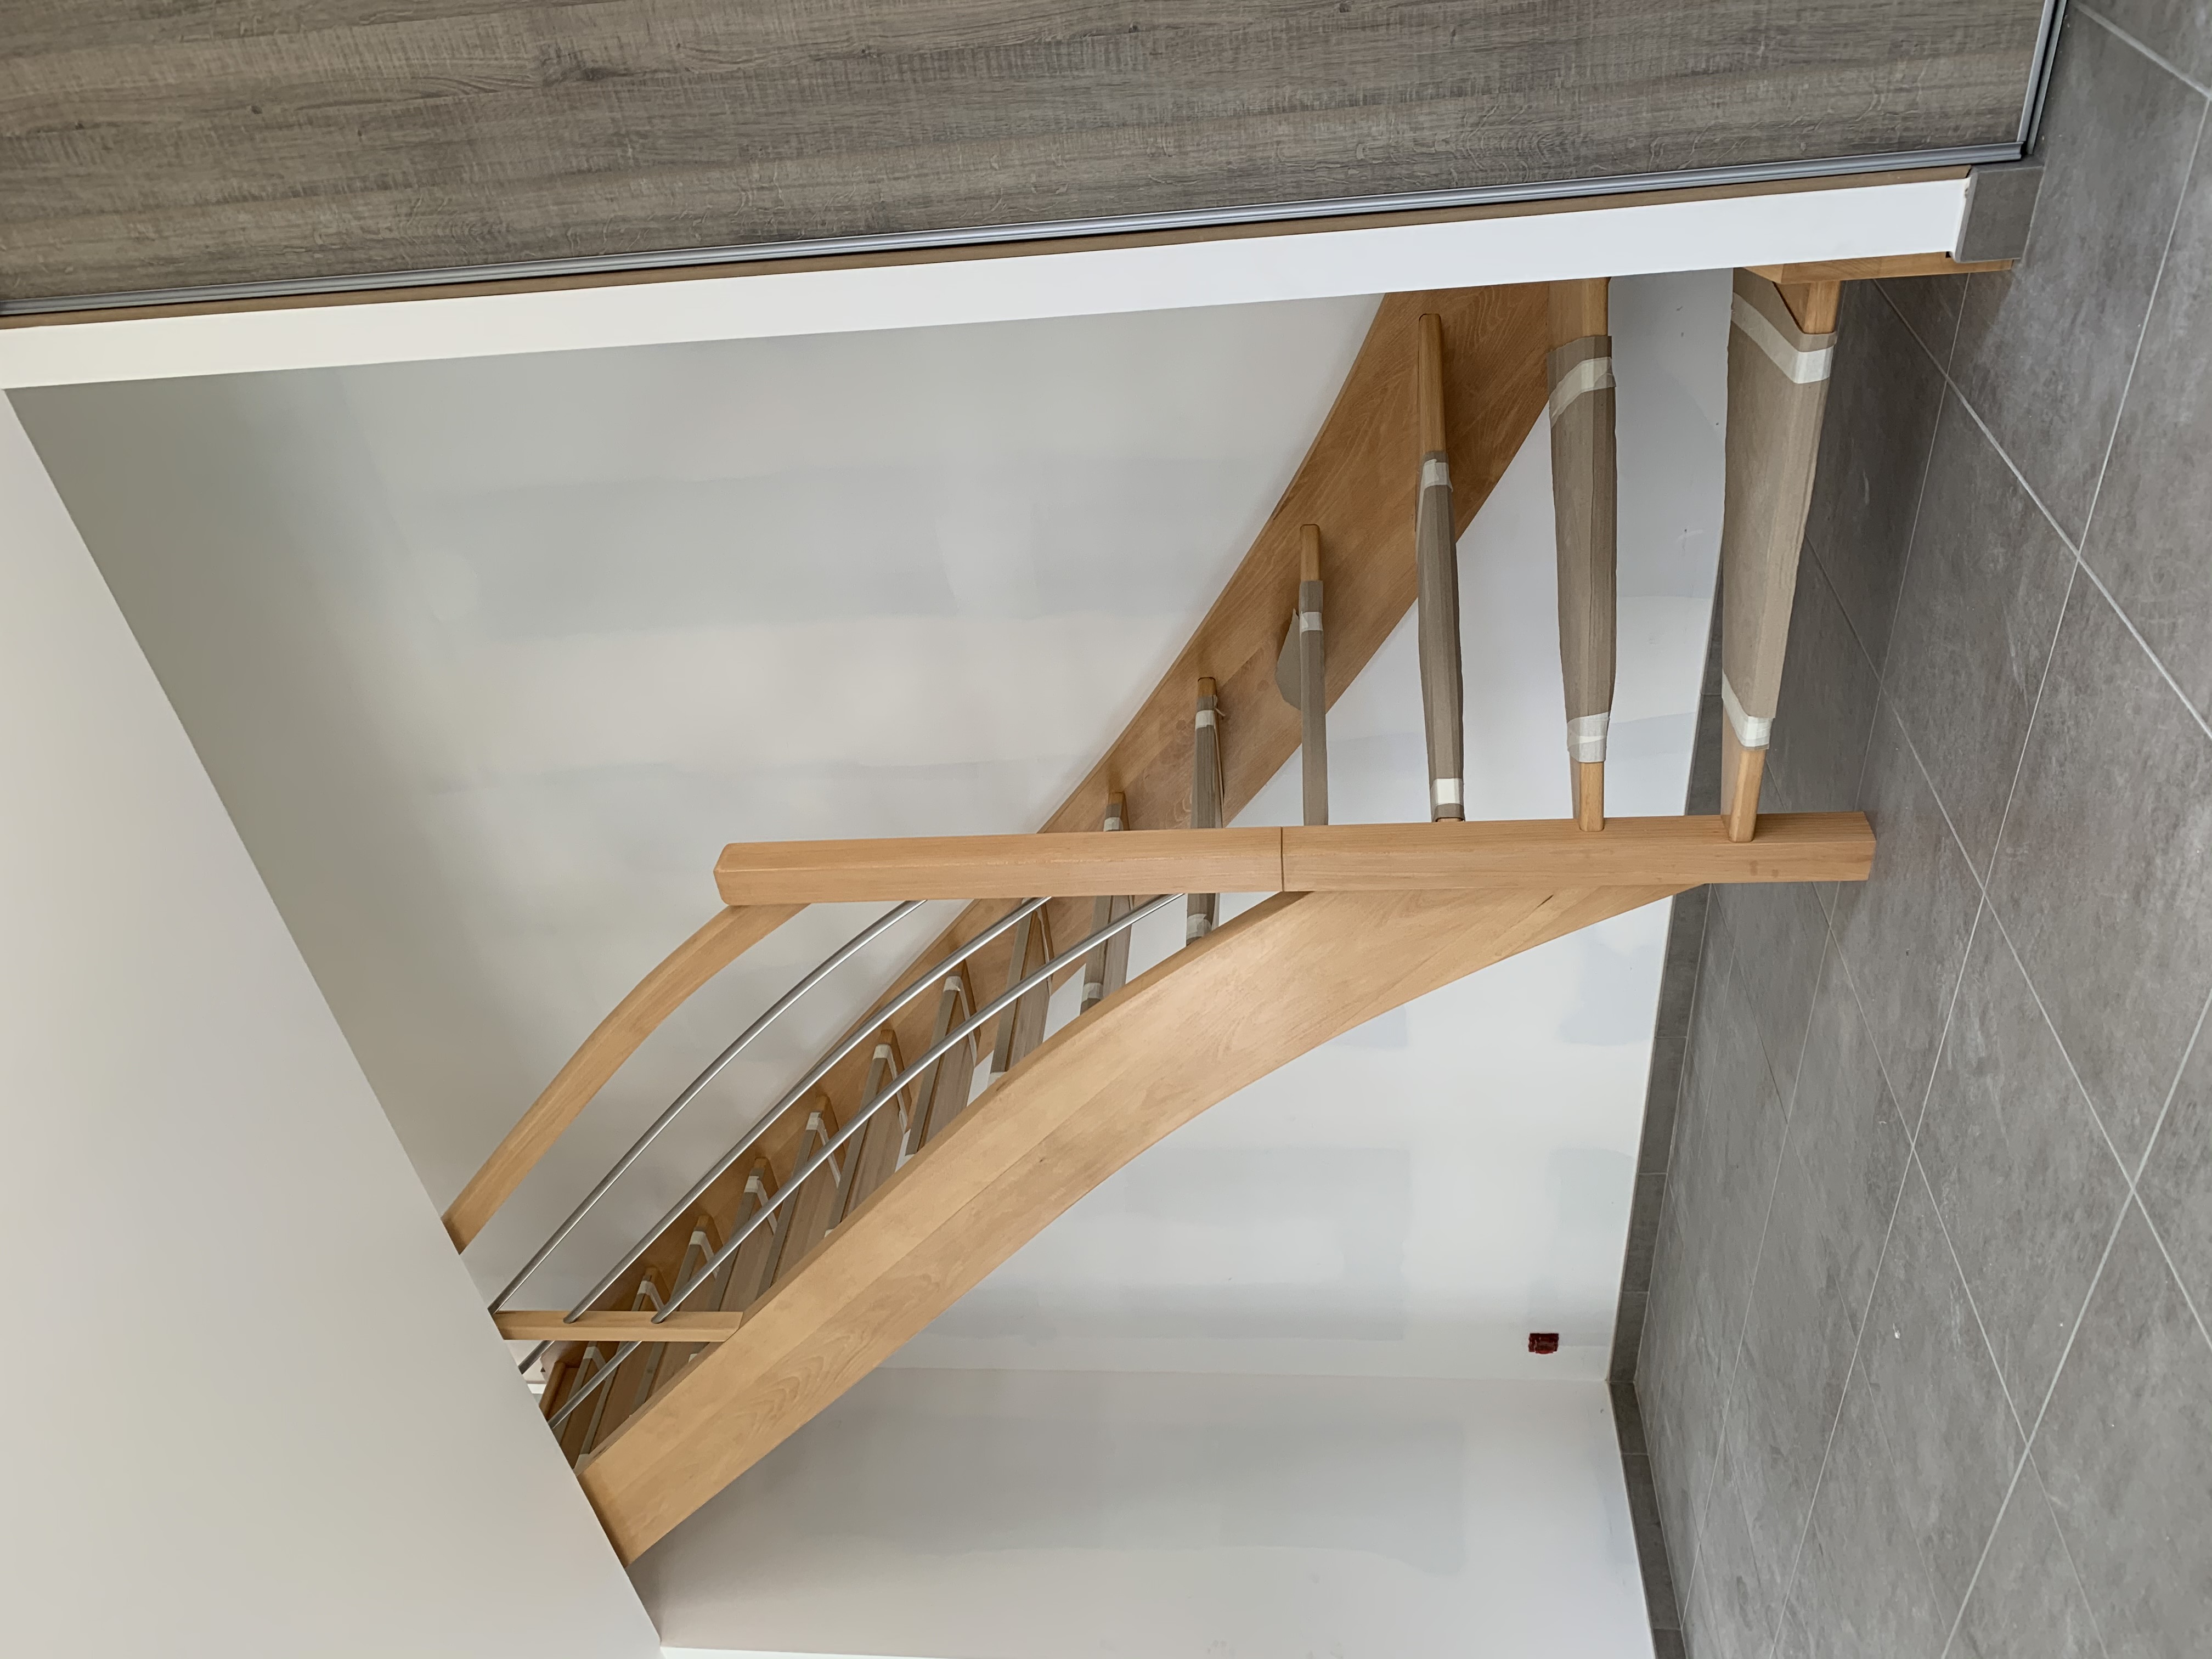 Escalier avec balustre démontable pour facilité le passage du mobilier à l'étage.